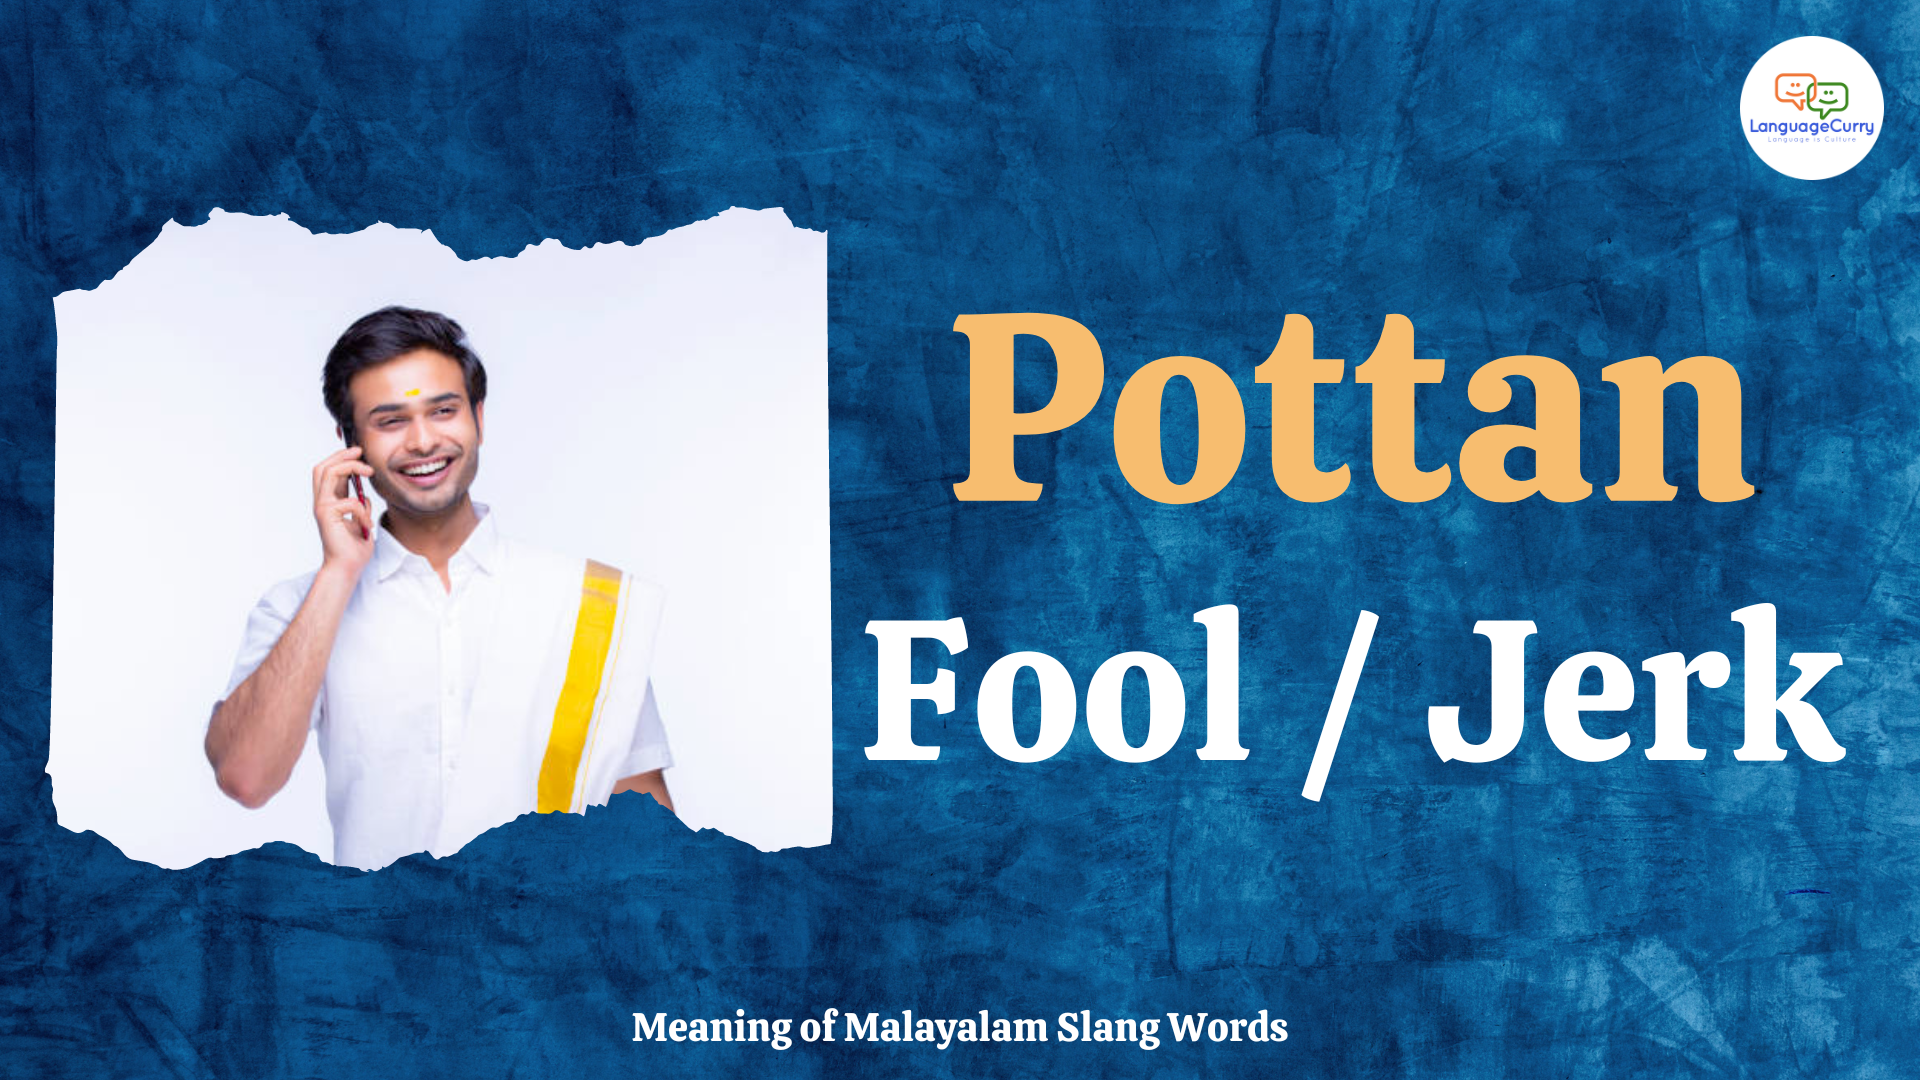 Malayalam slang word pottan